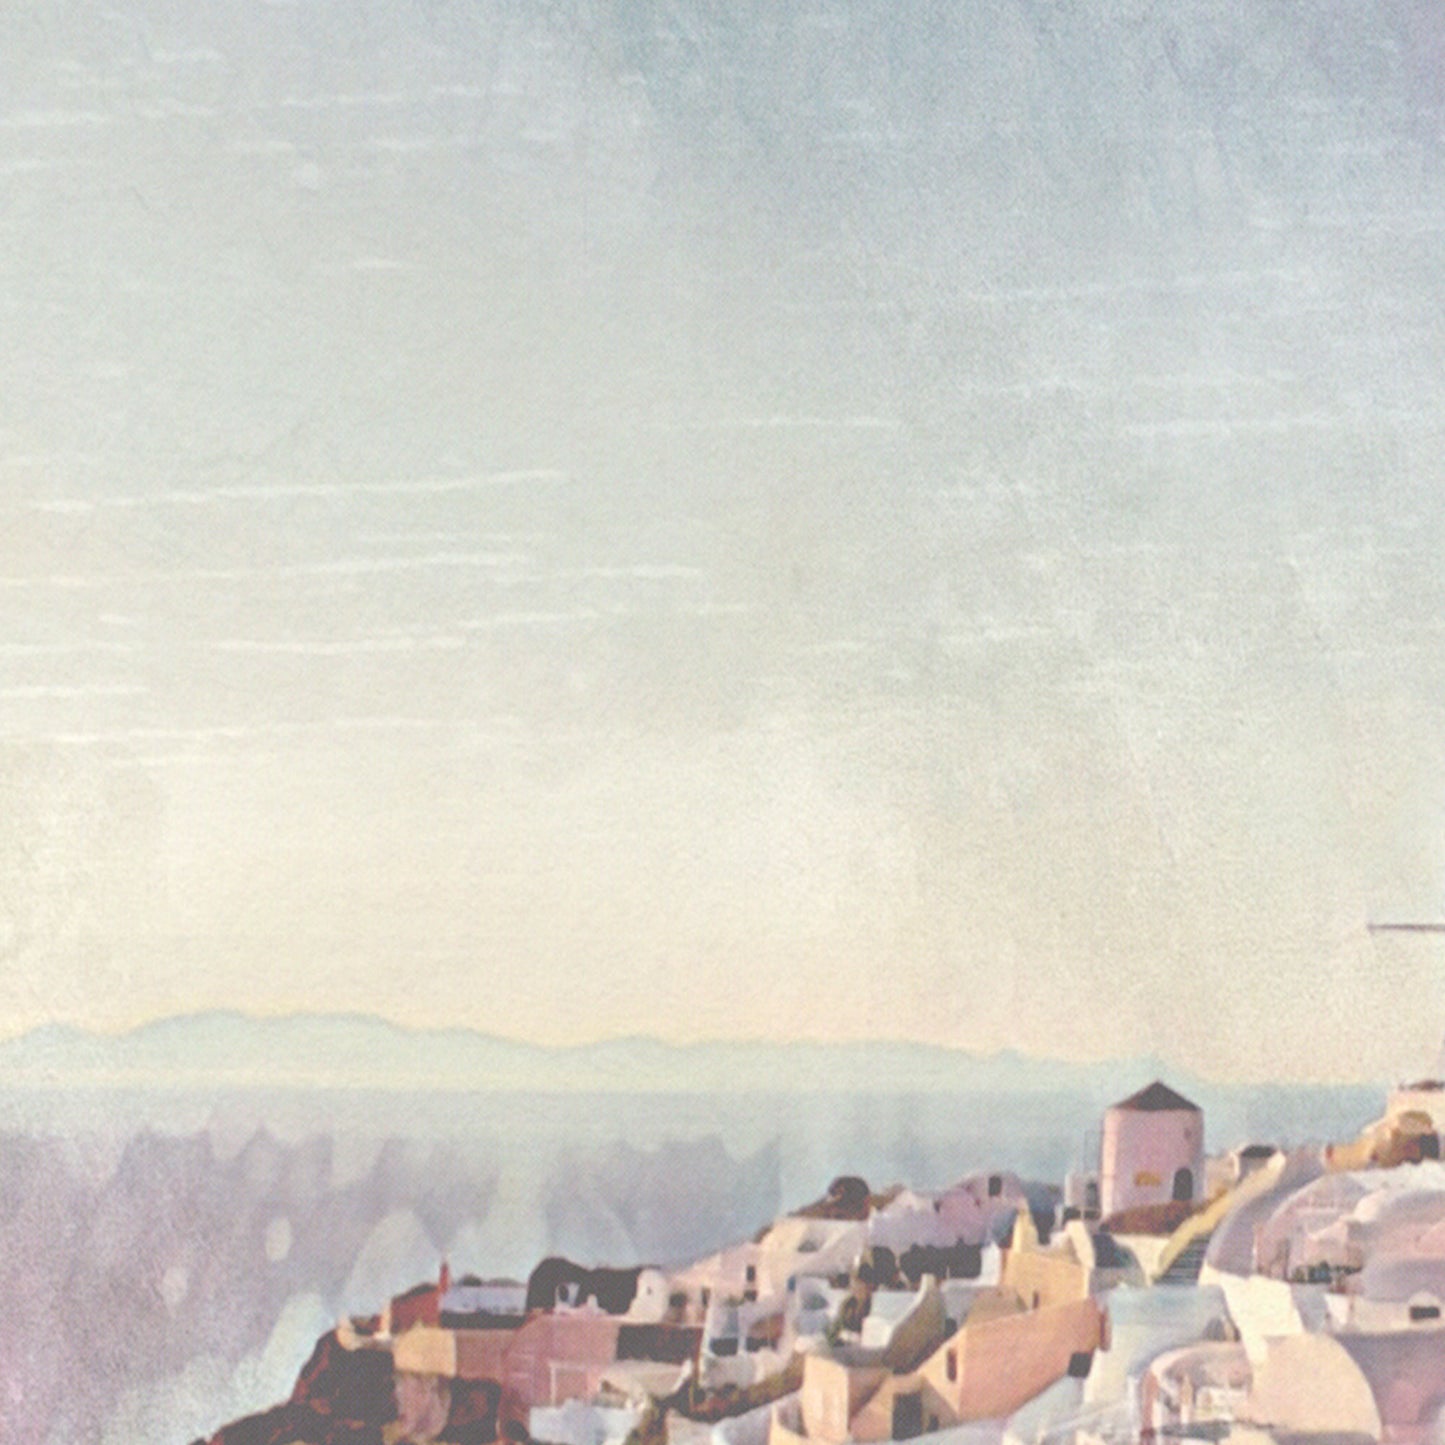 Détails du panorama de l'affiche de Santorin | Affiche de voyage en Grèce